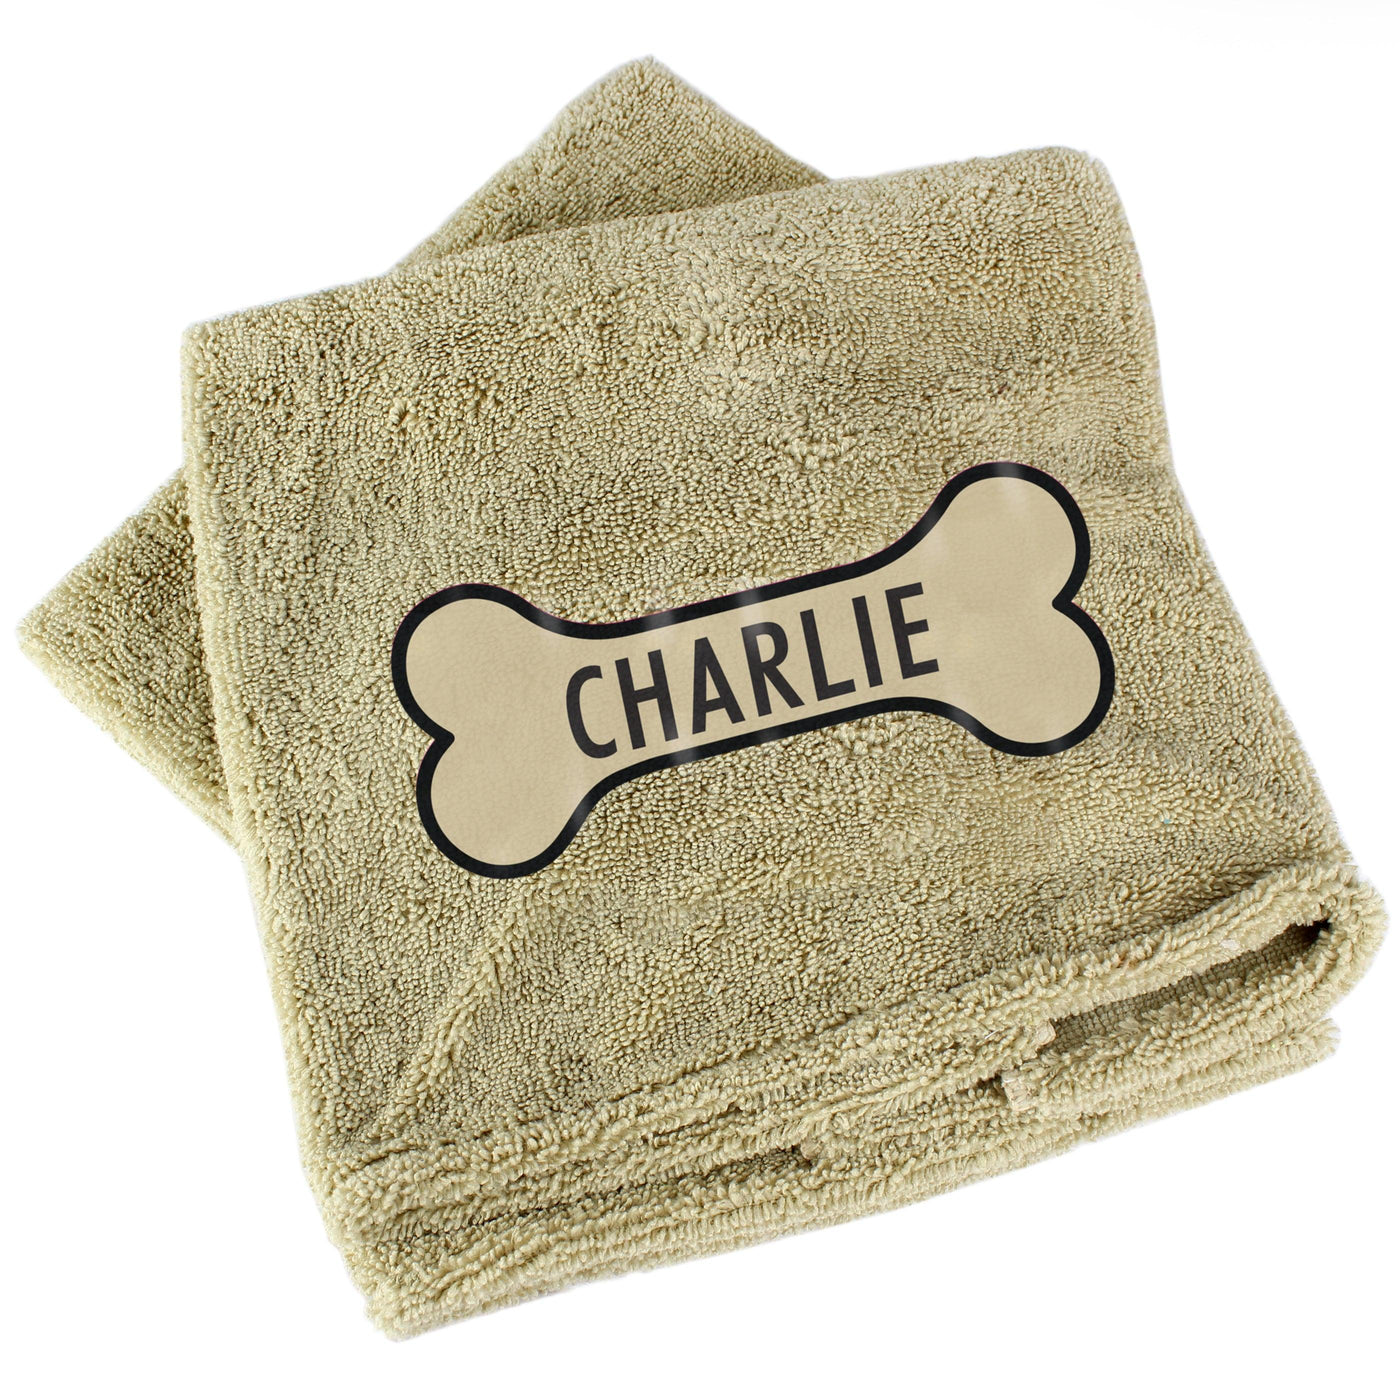 Personalised Bone Brown Microfiber Pet Towel - Shop Personalised Gifts